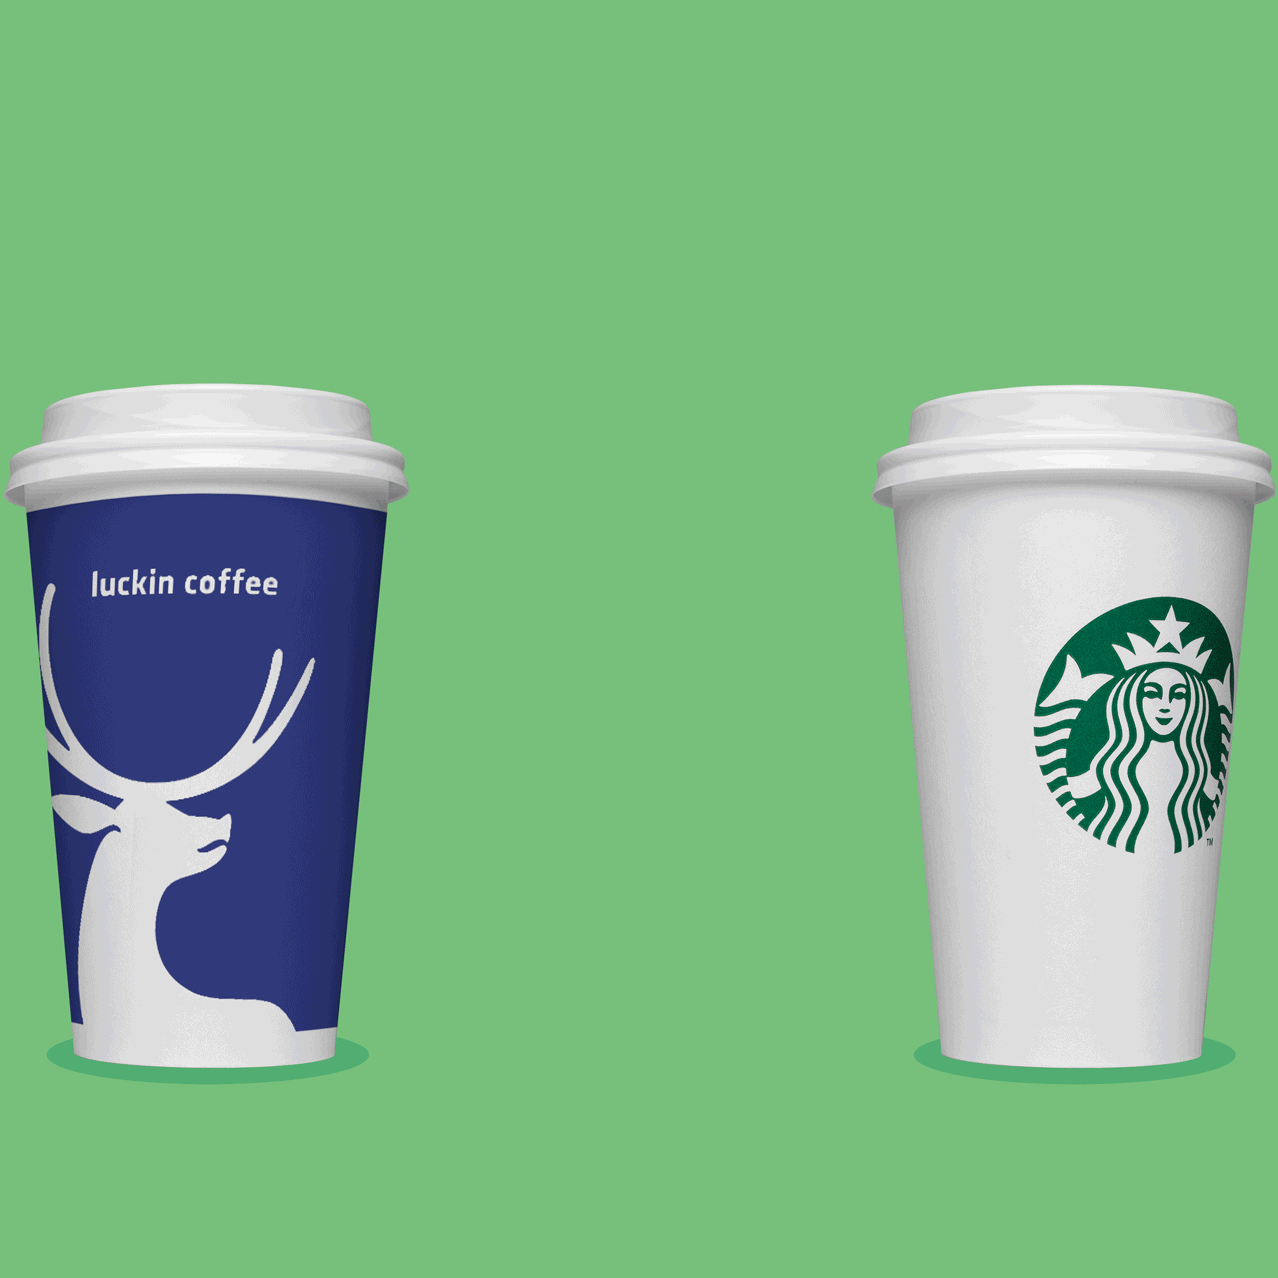 Thảm hoạ Starbucks: Bị mất ngôi vương vào tay 1 chuỗi từng phá sản, những ly cà phê giá 100  nghìn đồng dần thất sủng vì đắt đỏ - Ảnh 1.